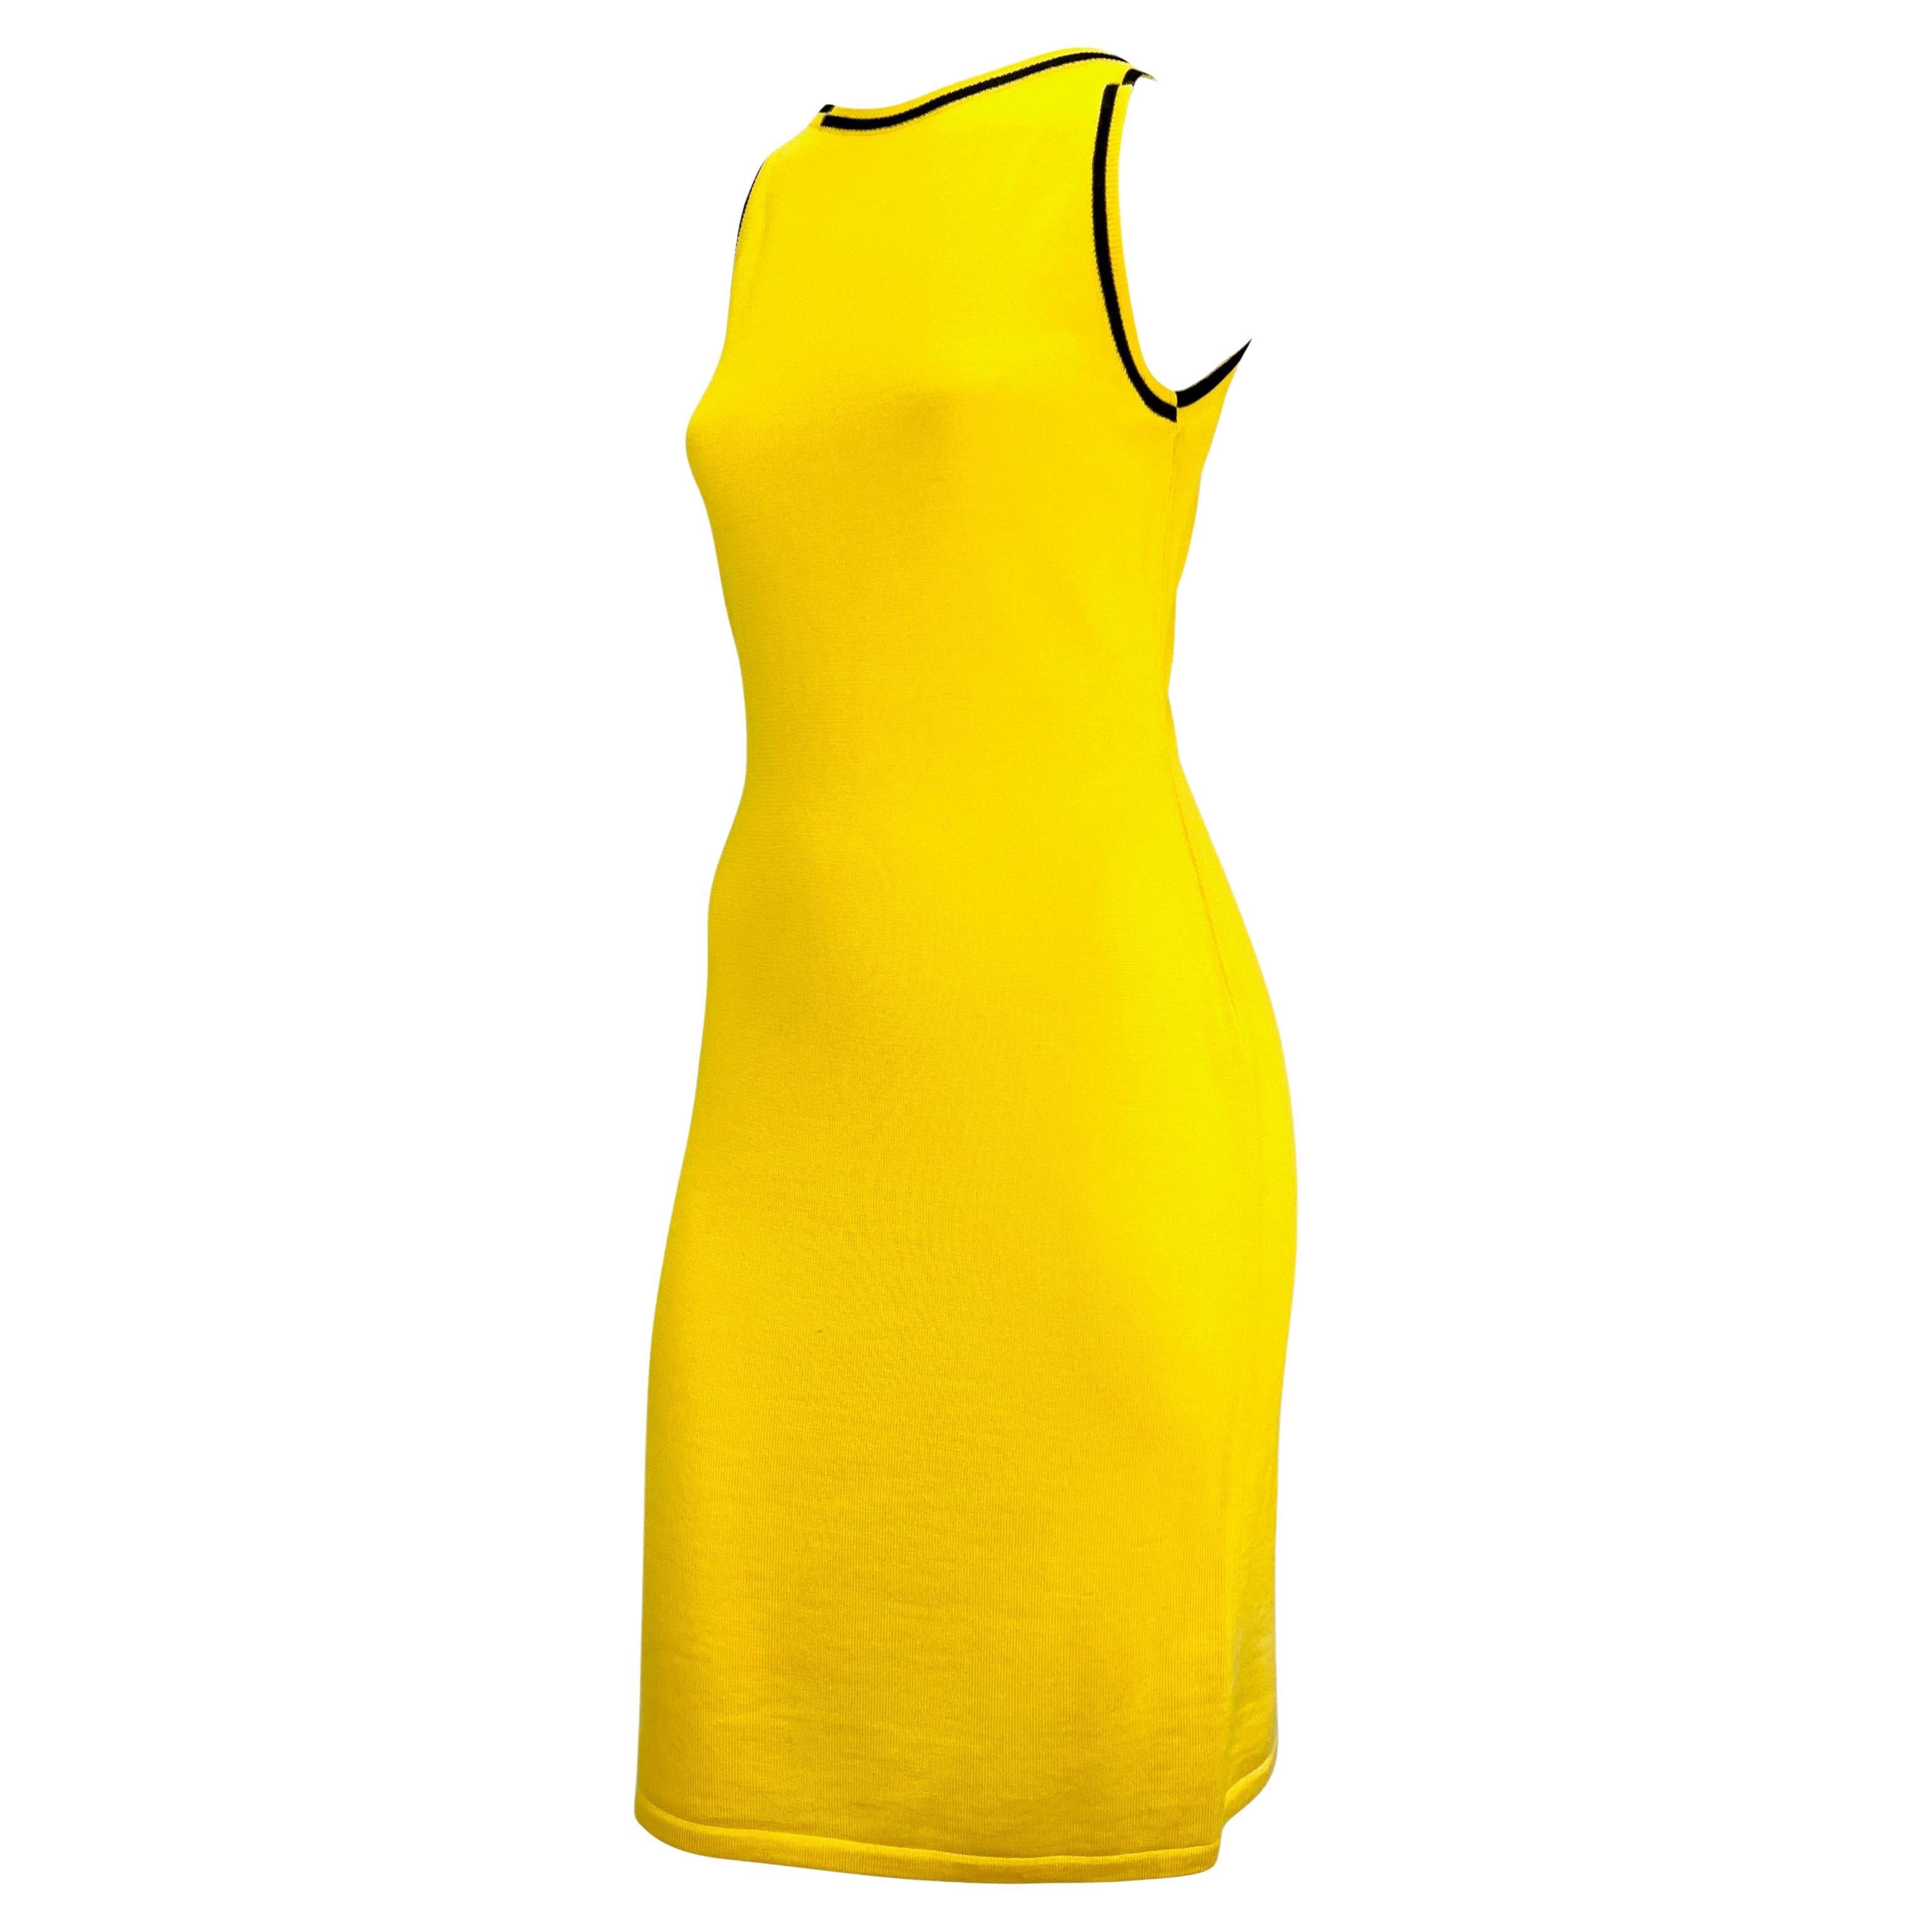 Late 1990s Gianni Versace Canary Yellow Knit Wool Sleeveless Dress